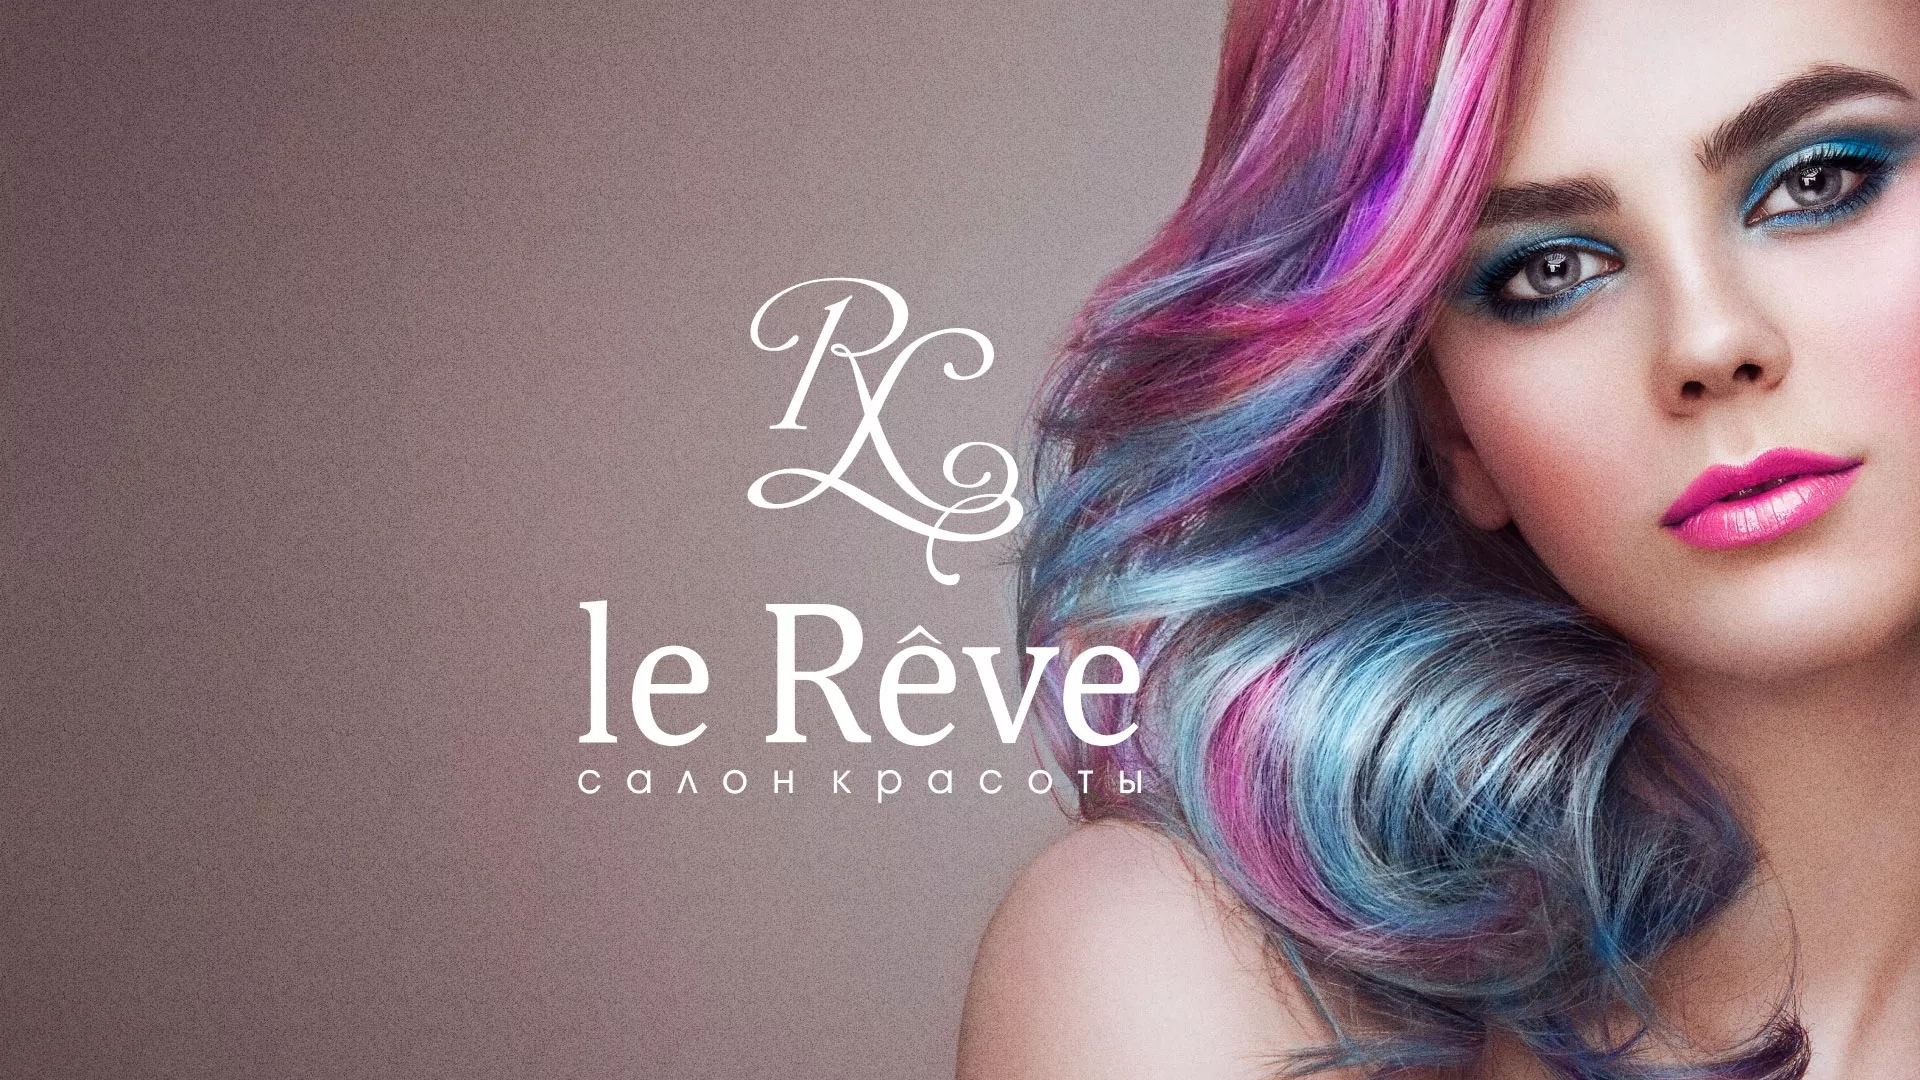 Создание сайта для салона красоты «Le Reve» в Череповце